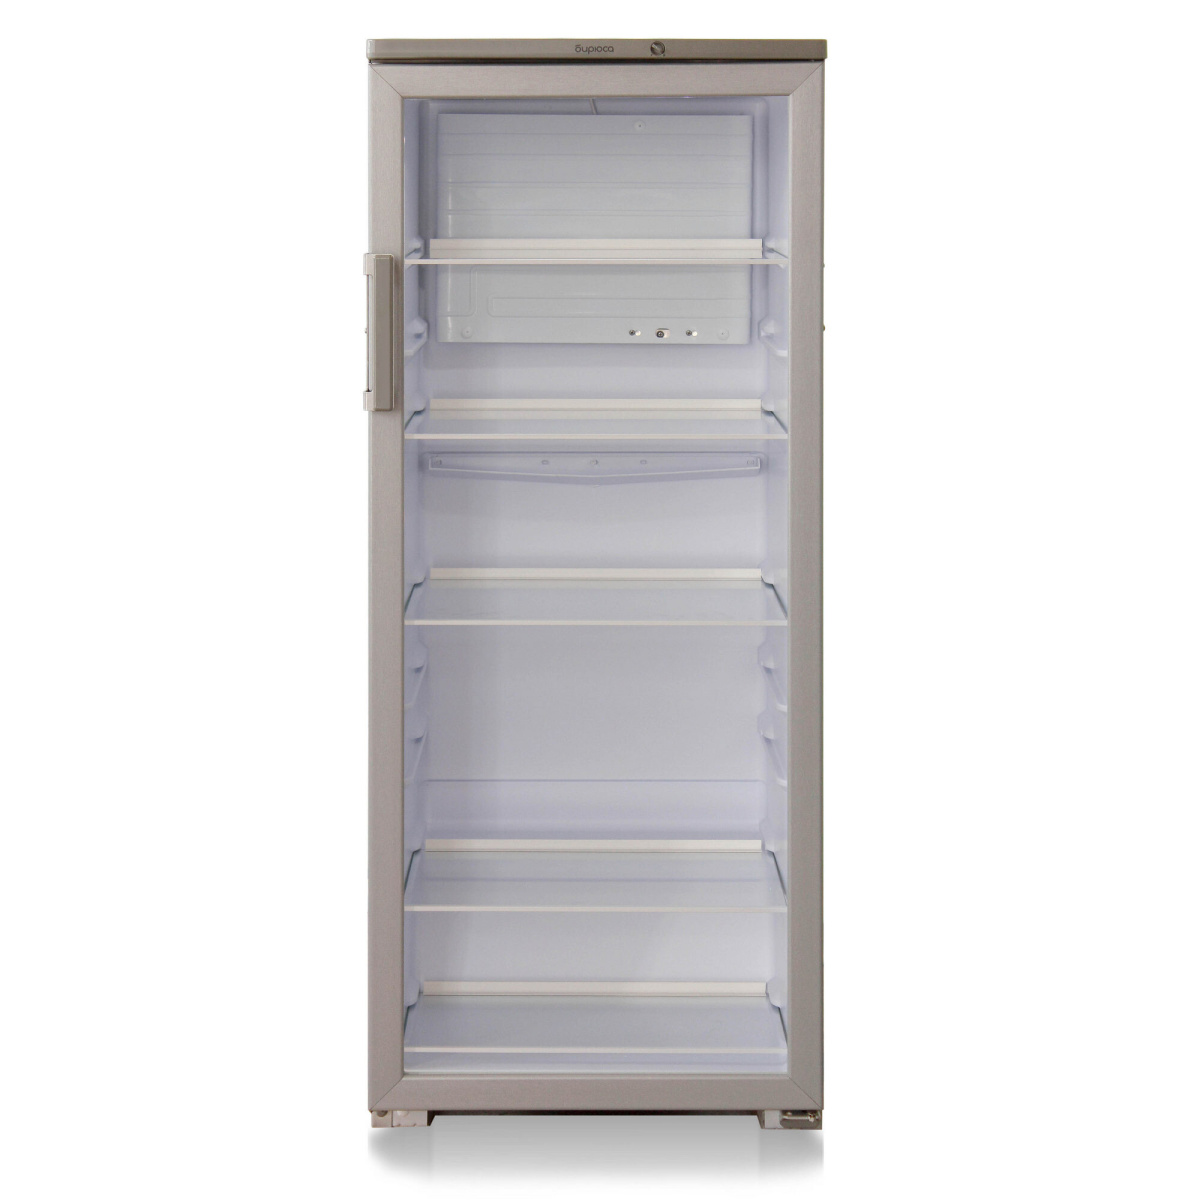 Холодильник витрина бирюса. Холодильный шкаф Бирюса 290. Холодильник Бирюса 290 витрина. Холодильник - витрина Бирюса 290е. Шкаф-витрина Бирюса b290.